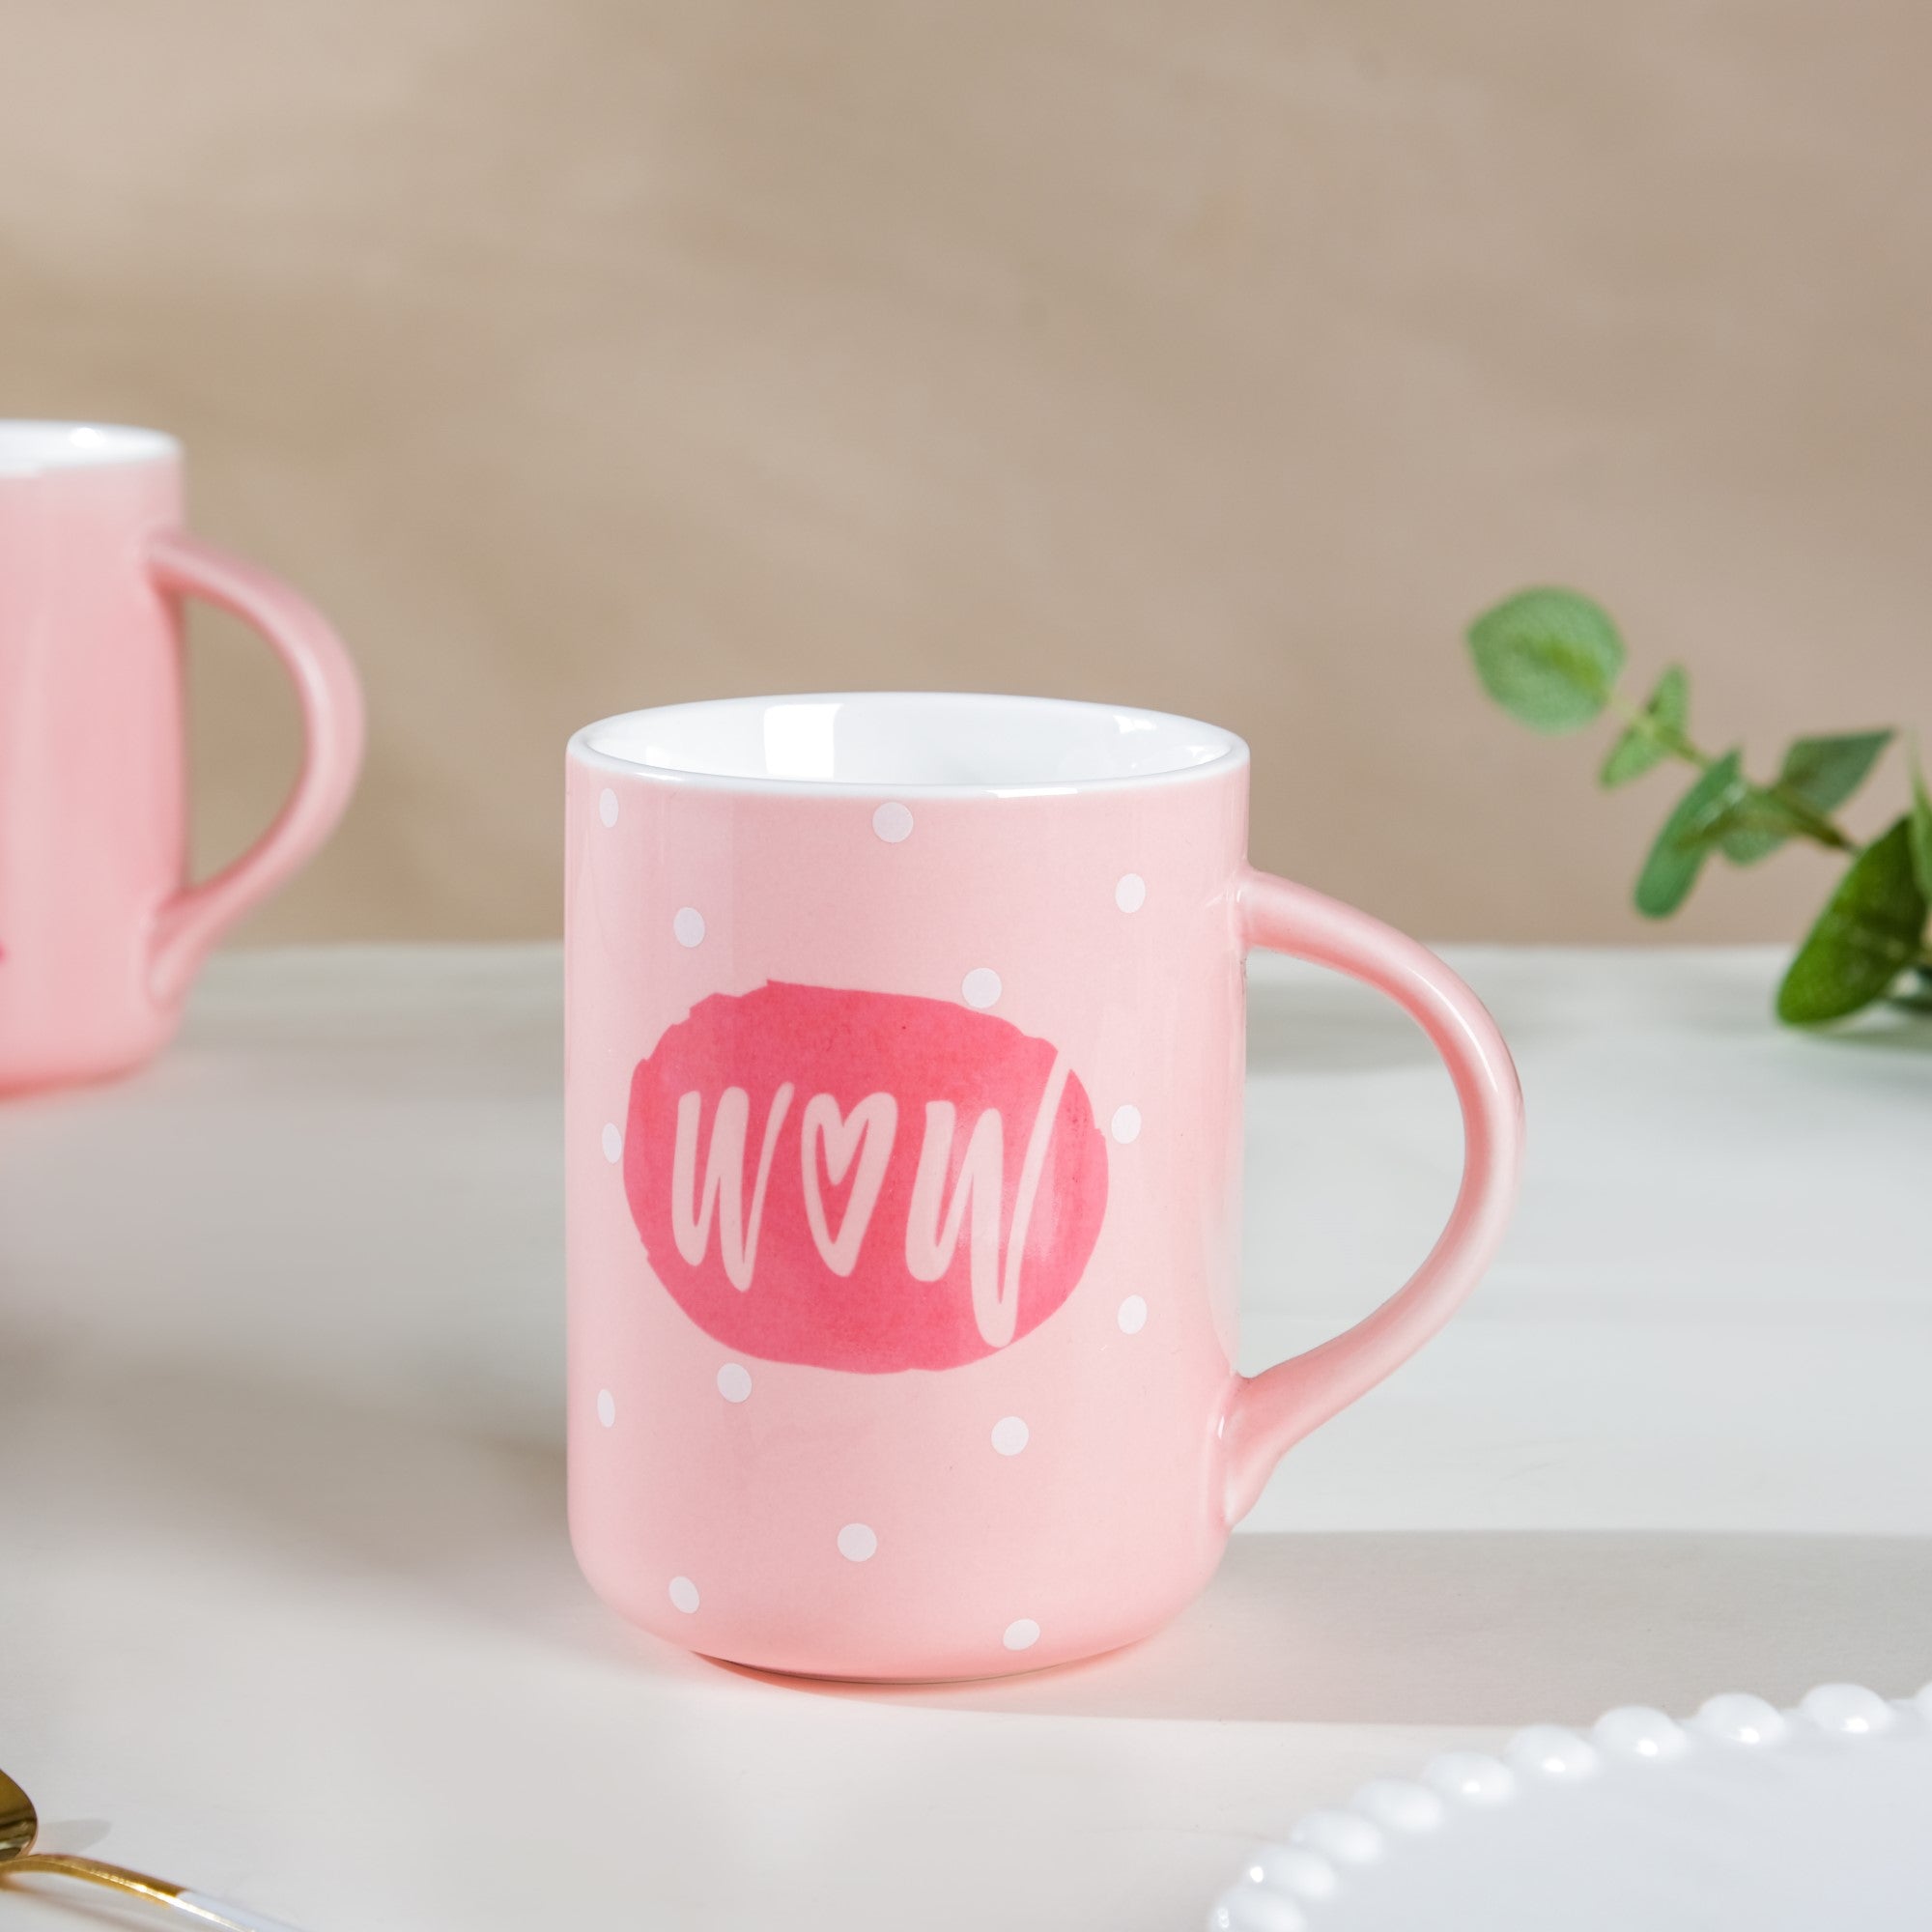 Pink Cups- Mug for coffee, tea mug, cappuccino mug | Cups and Mugs for Coffee Table & Home Decor